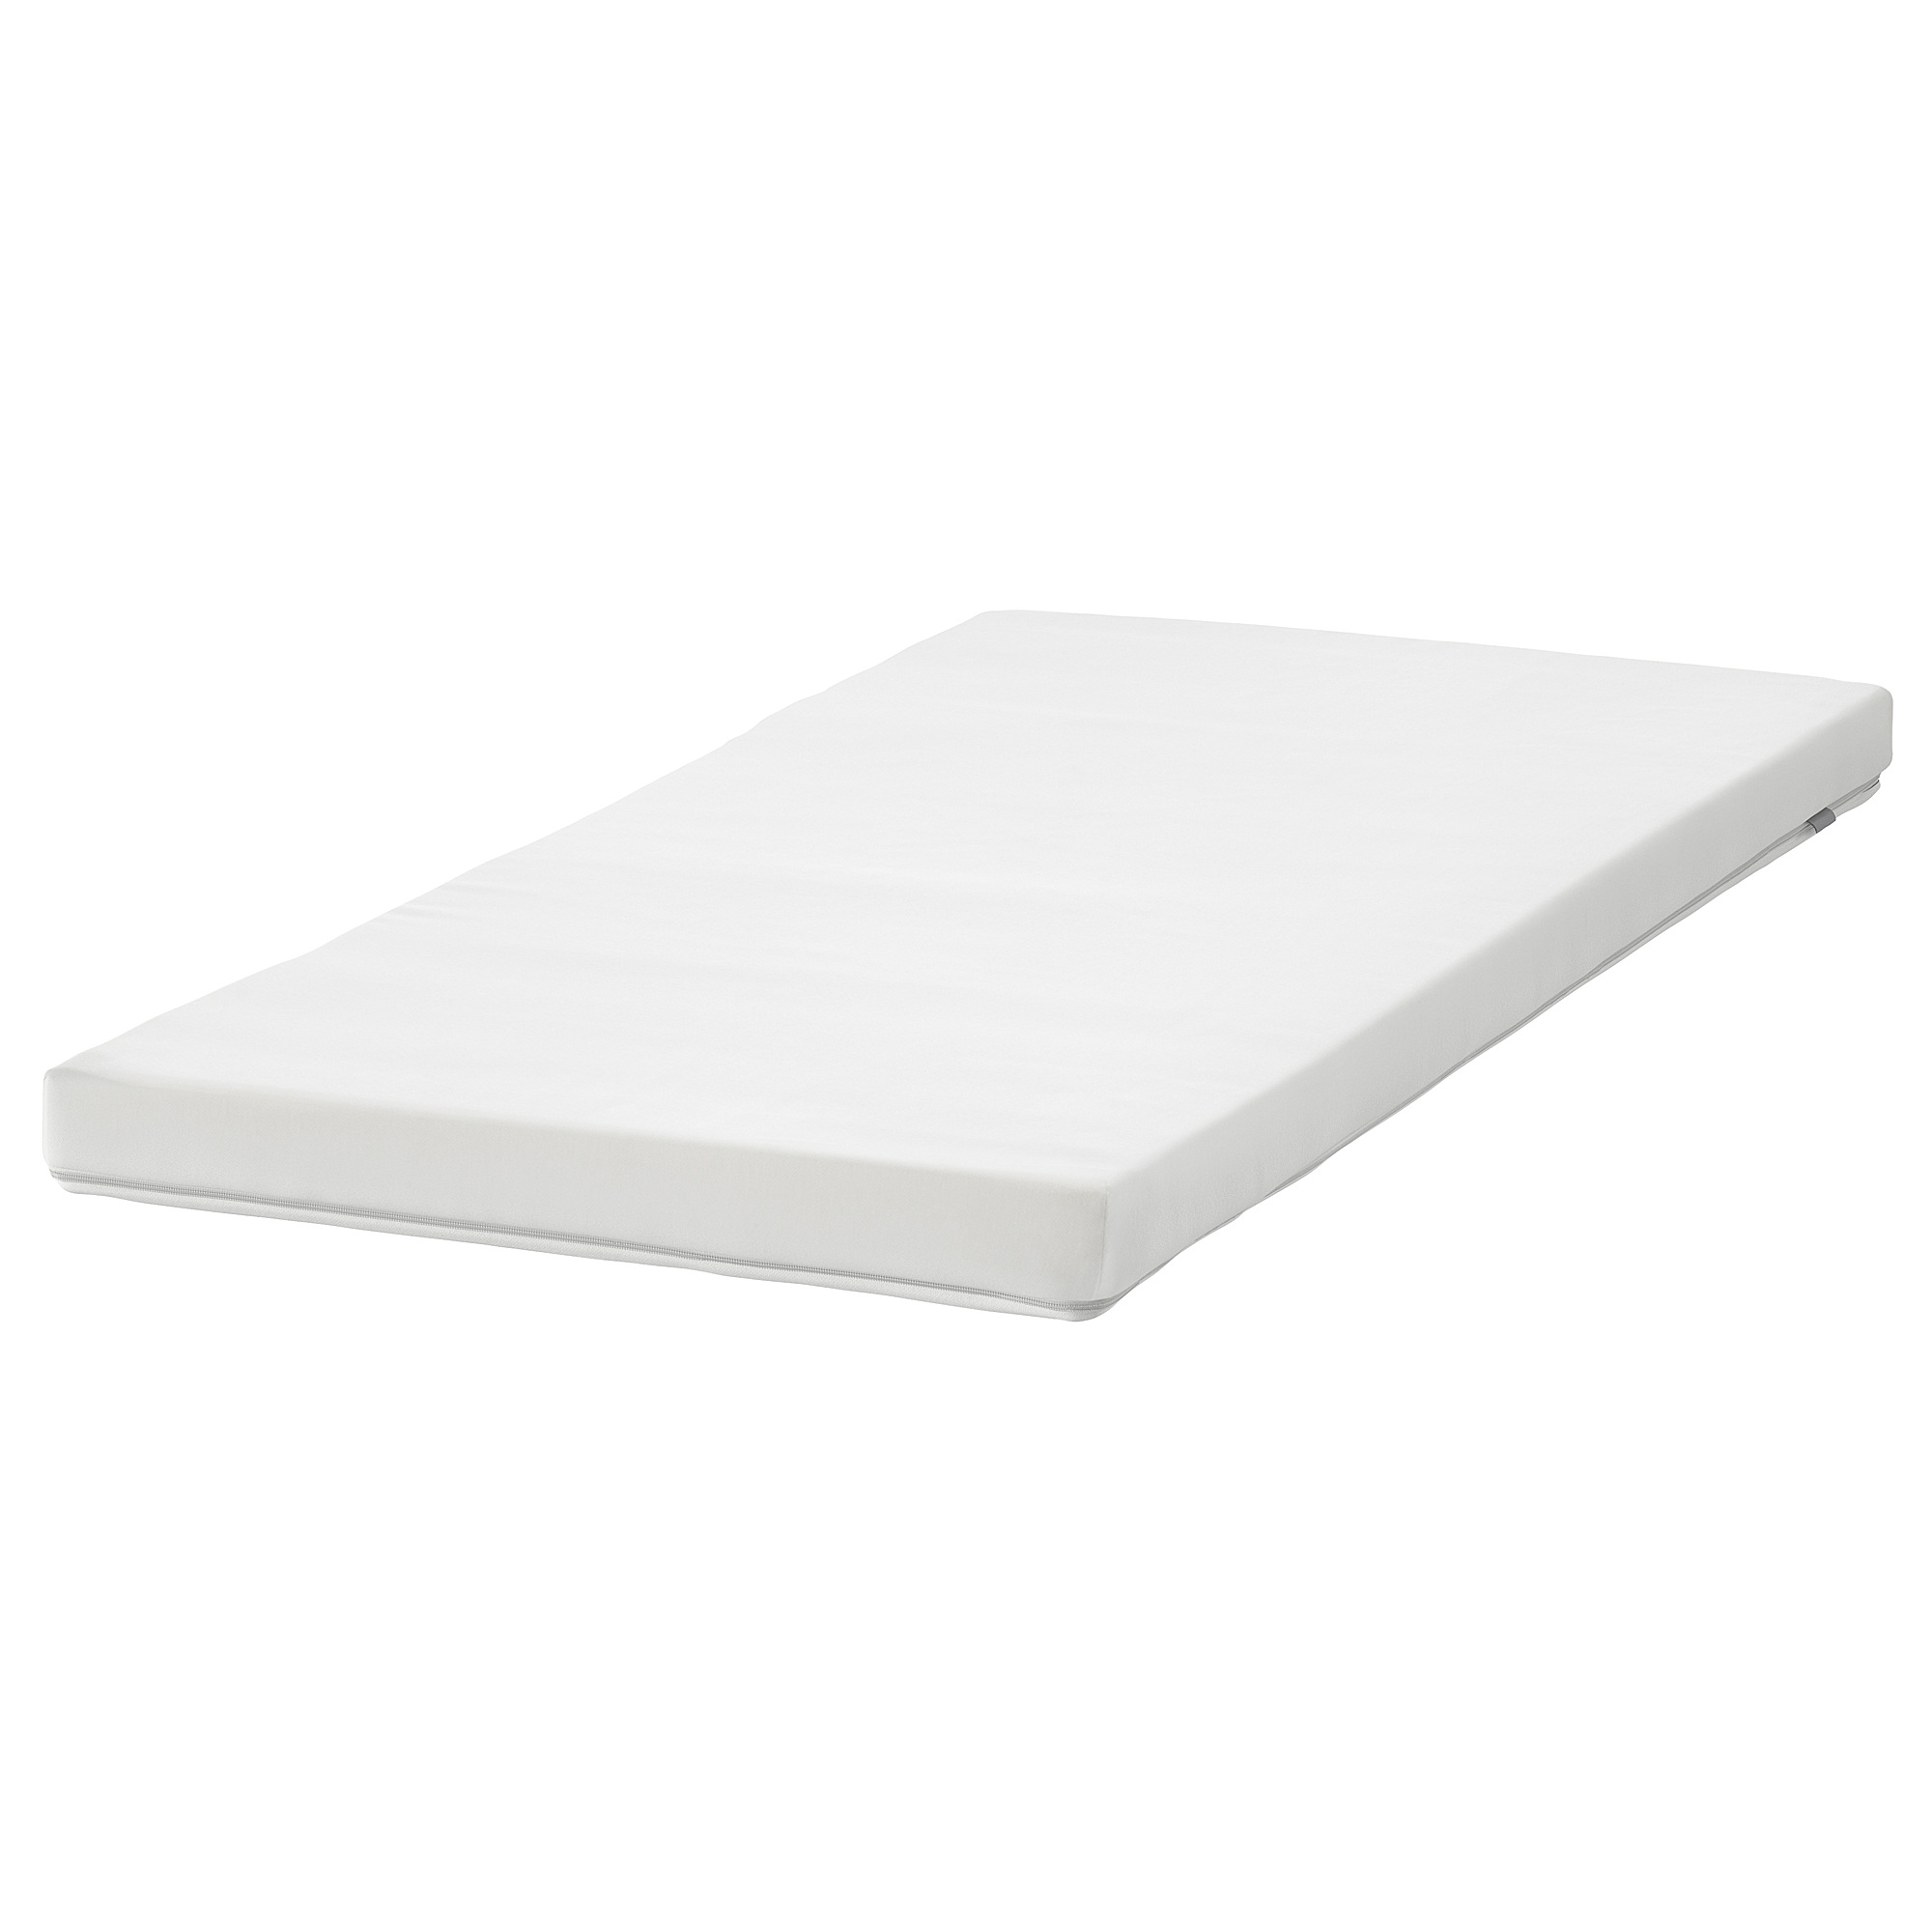 PELLEPLUTT foam mattress for cot